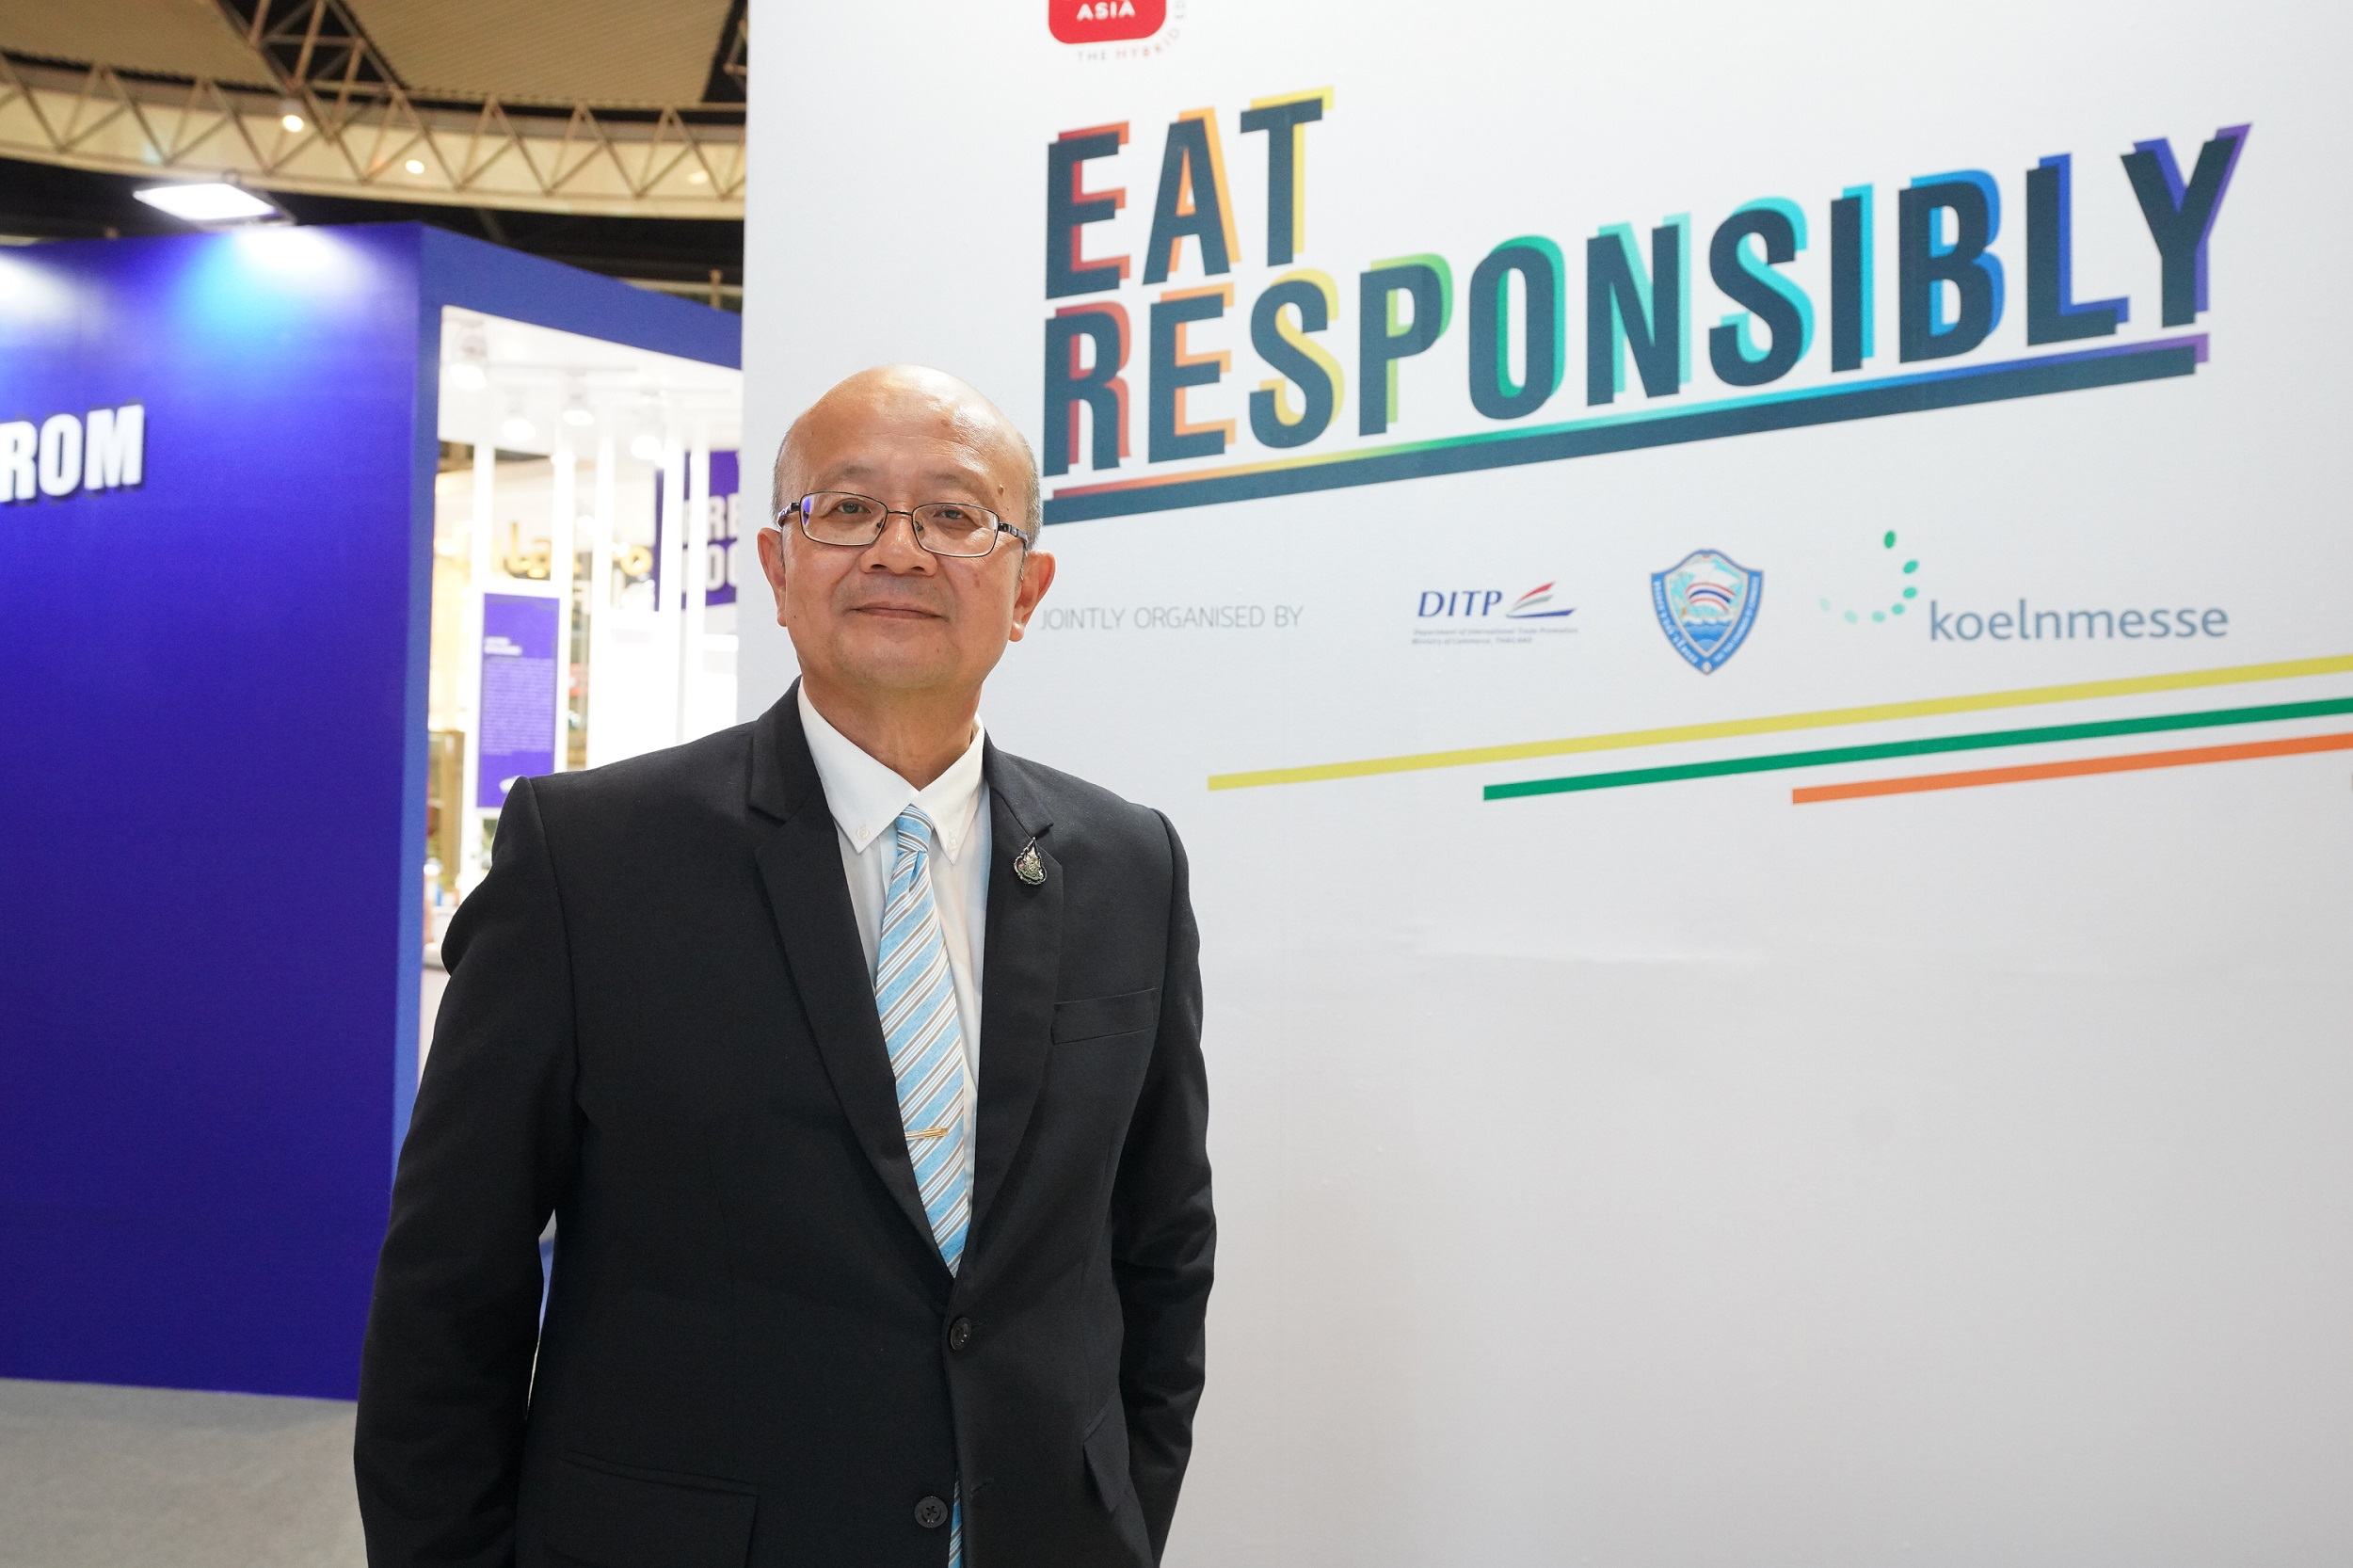 ชวนสัมผัส 8 โซนนิทรรศการ Eat Responsibly ในงาน THAIFEX ANUGA ASIA 2020 The Hybrid Edition ภายใต้คอนเซปต์ การบริโภคอย่างมีจิตสำนึก